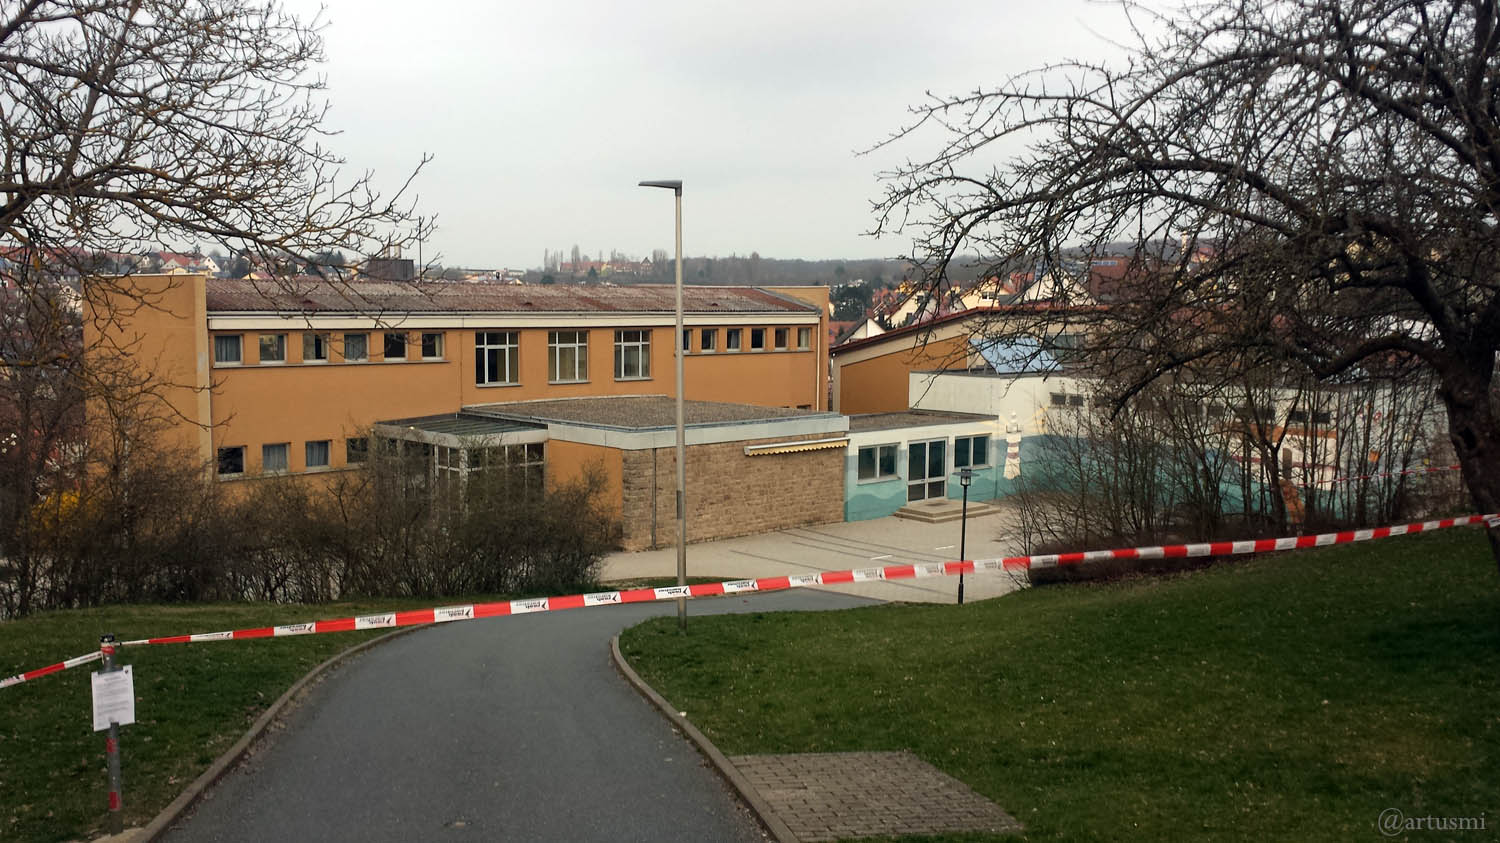 Wegen Coronavirus geschlossenes Schulhaus in Eisingen am 20. März 2020